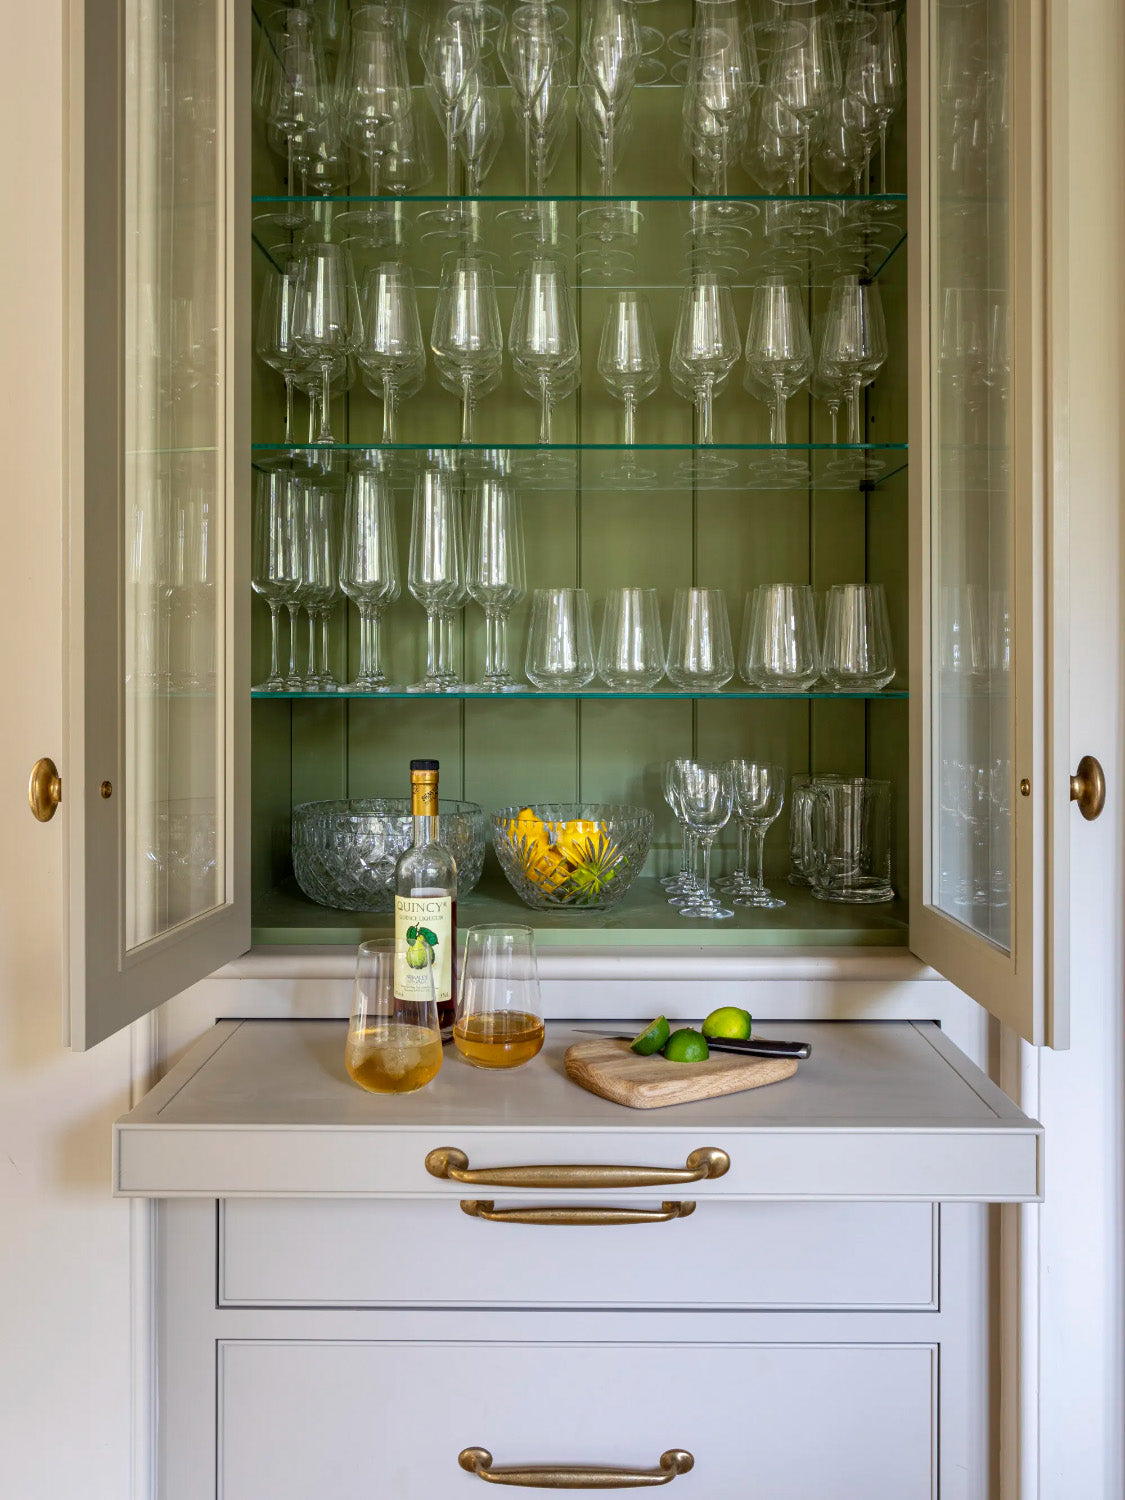 Queslett Kitchen Cupboard Handles solid brass